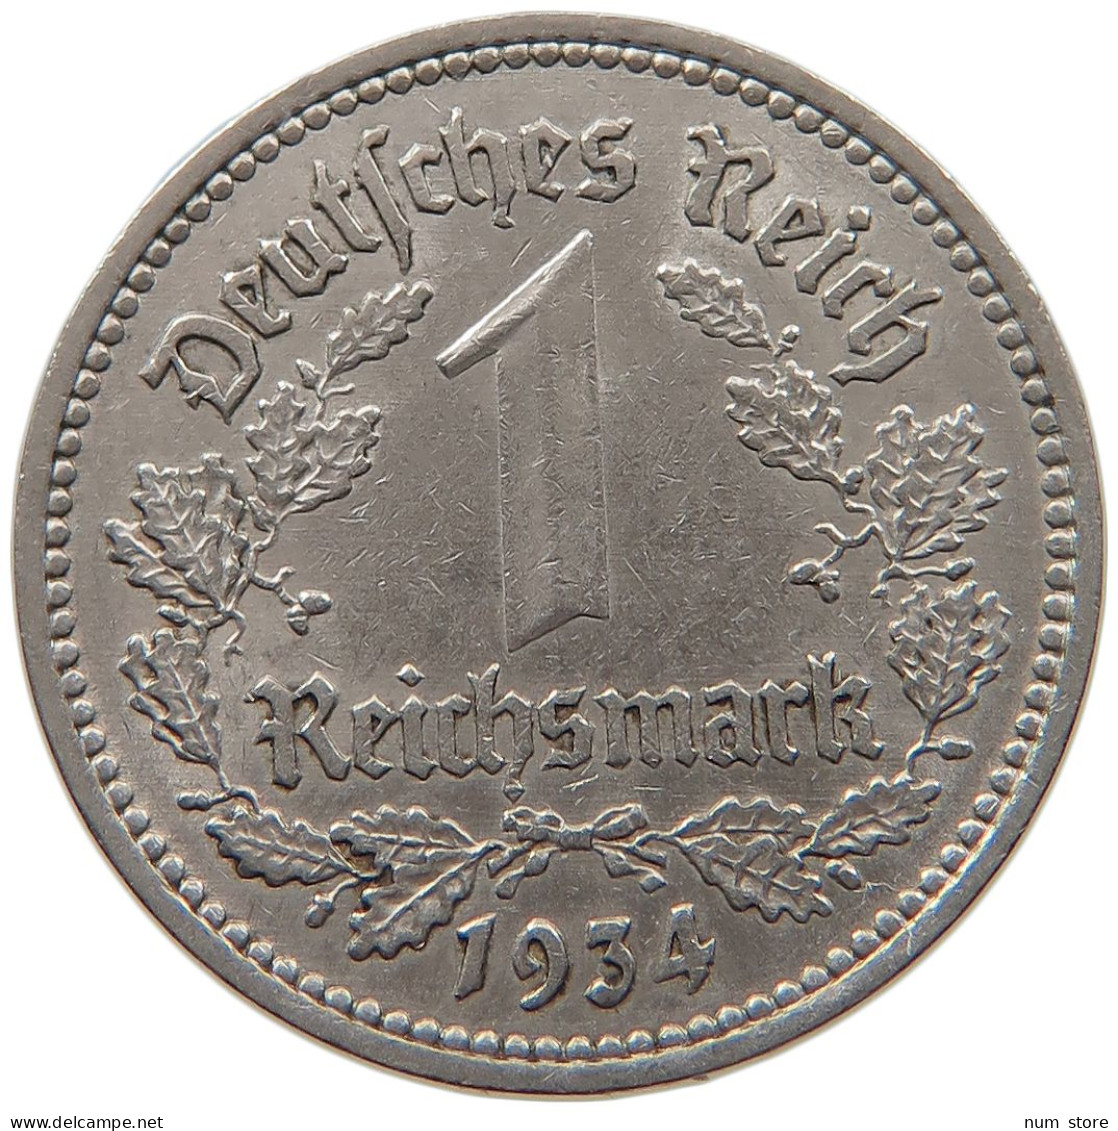 DRITTES REICH MARK 1934 A  #MA 099358 - 1 Reichsmark